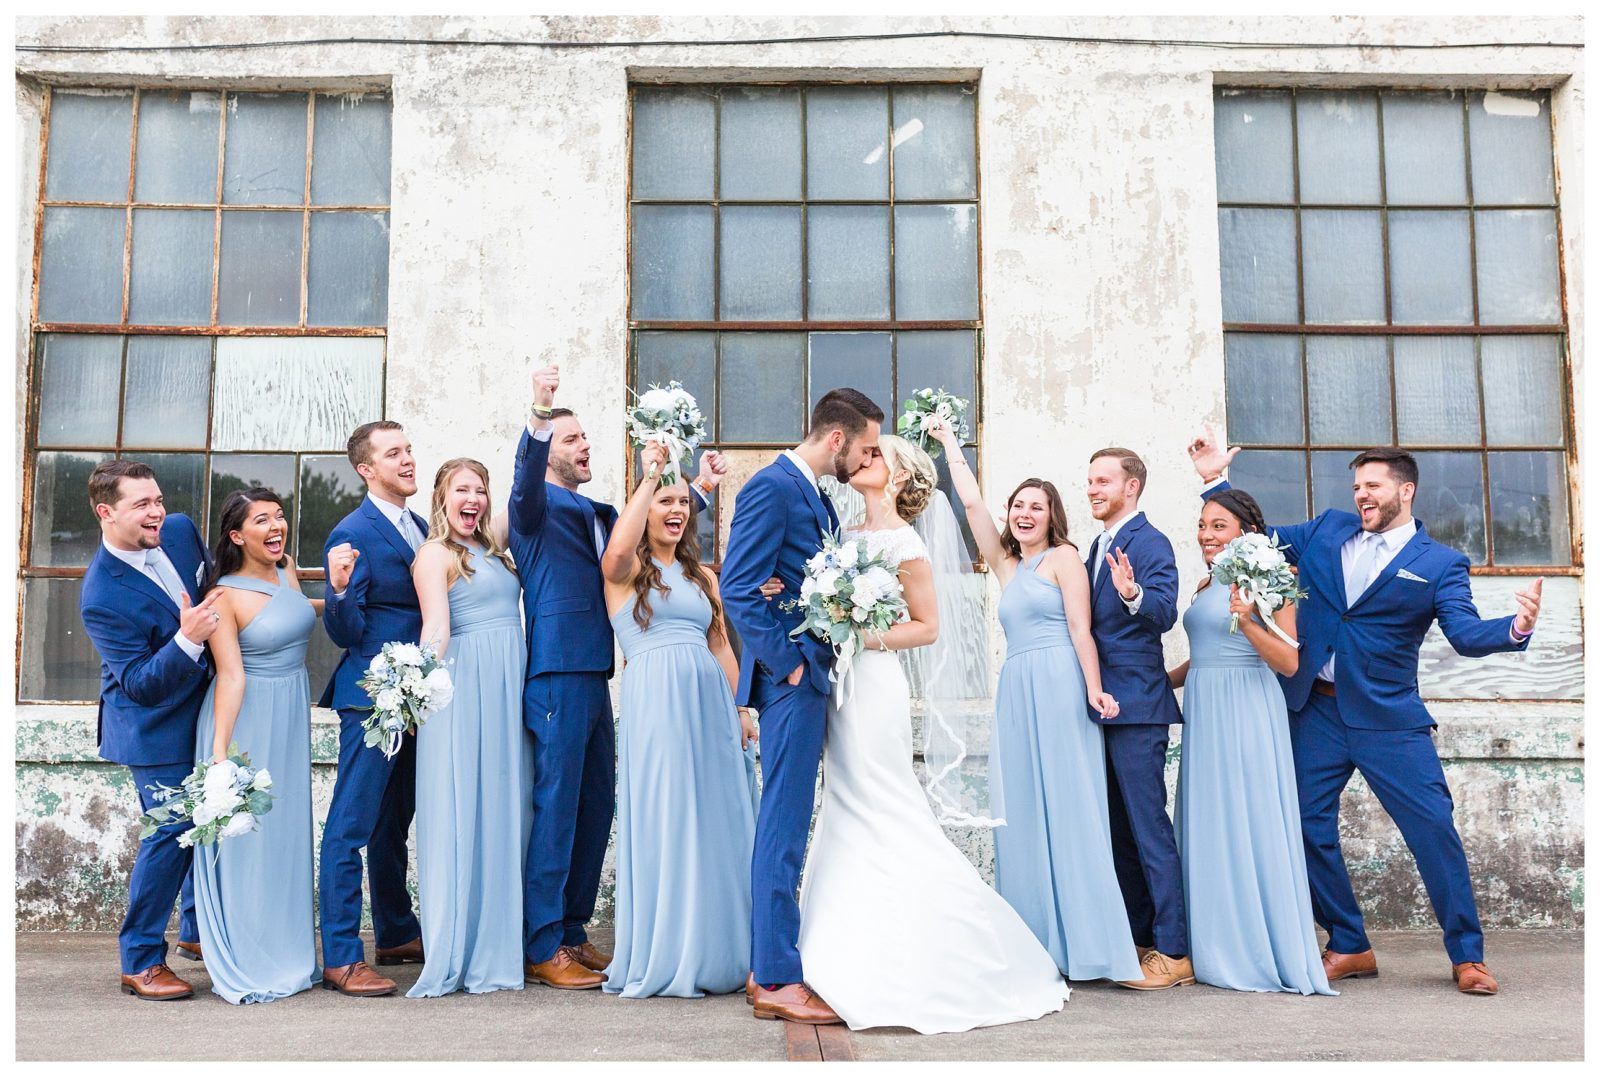 Синяя свадьба